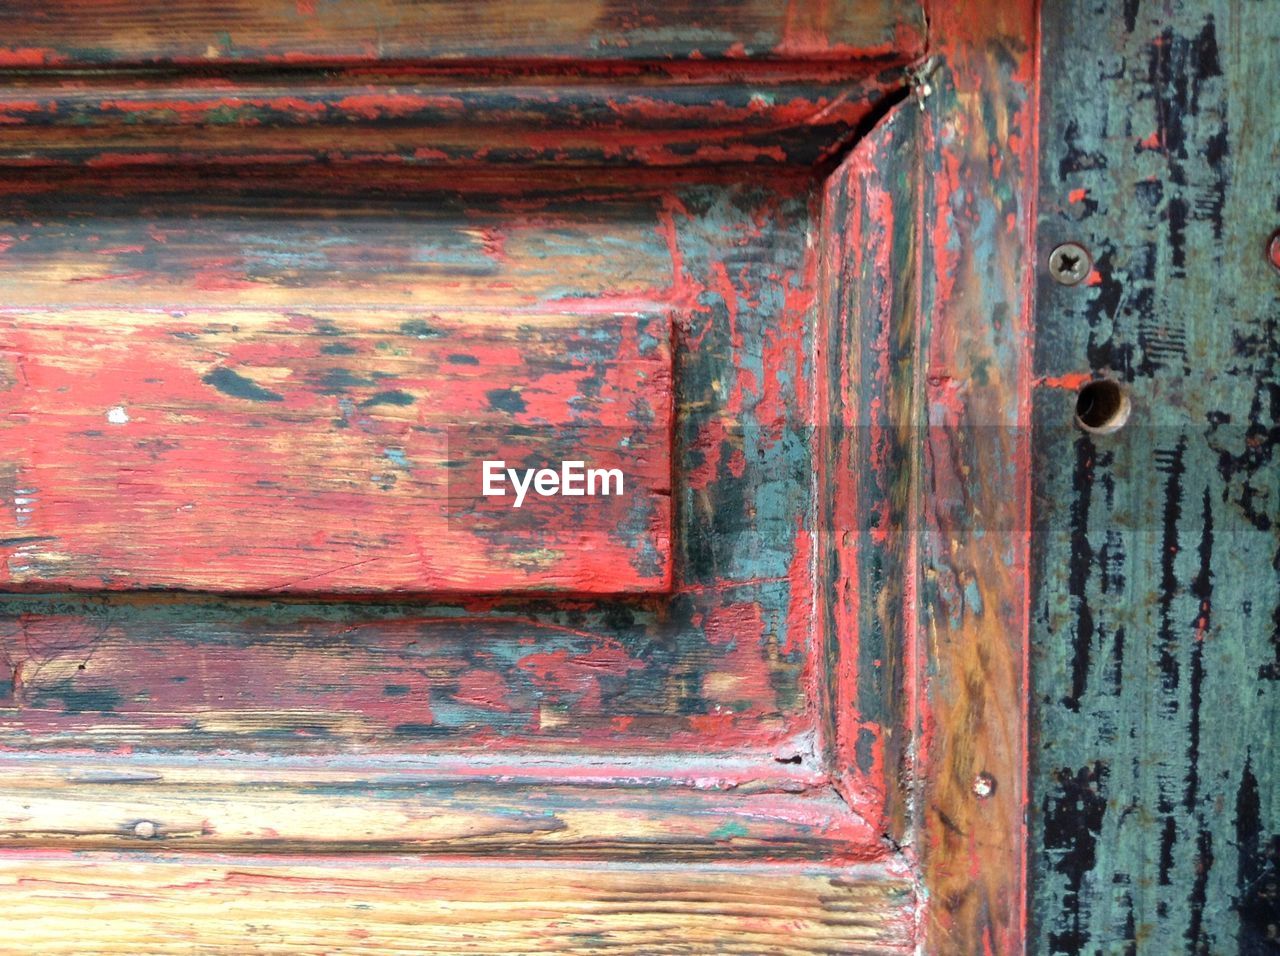 Close-up of weathered wooden door